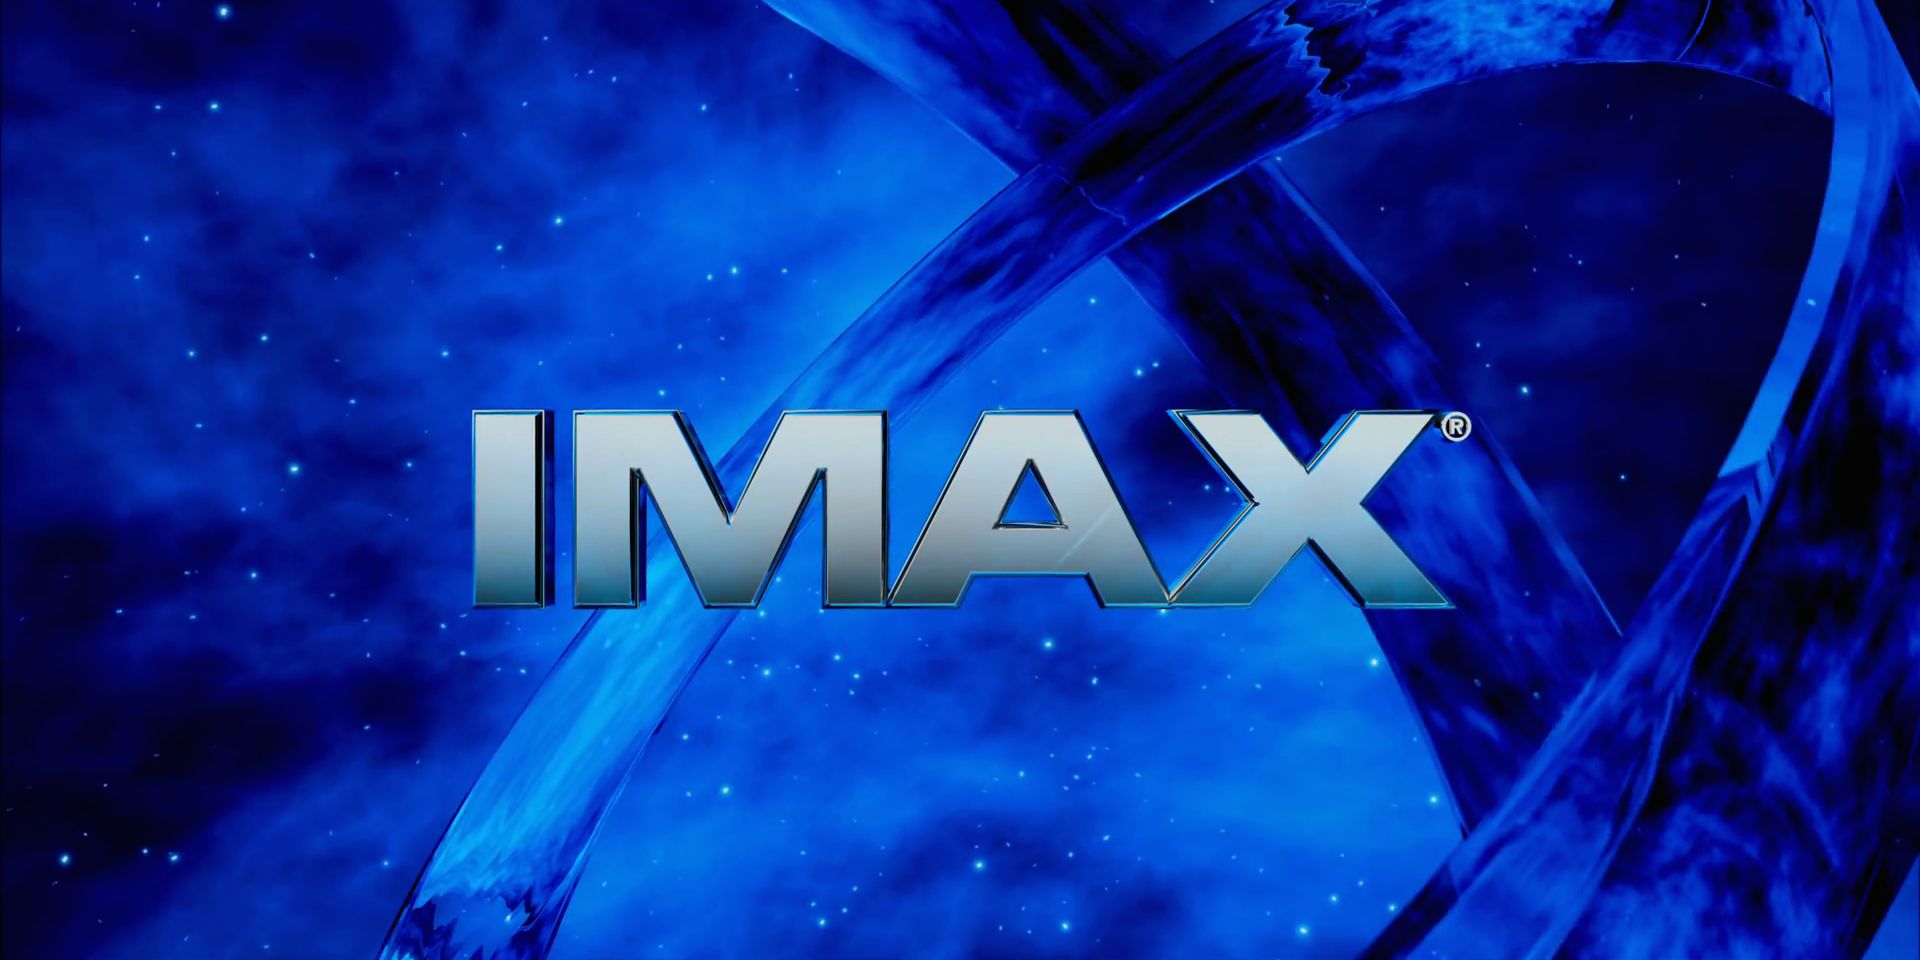 Cinema IMAX, Dolby Atmos, THX, 4K... Ma cosa vogliono dire? | TV ...